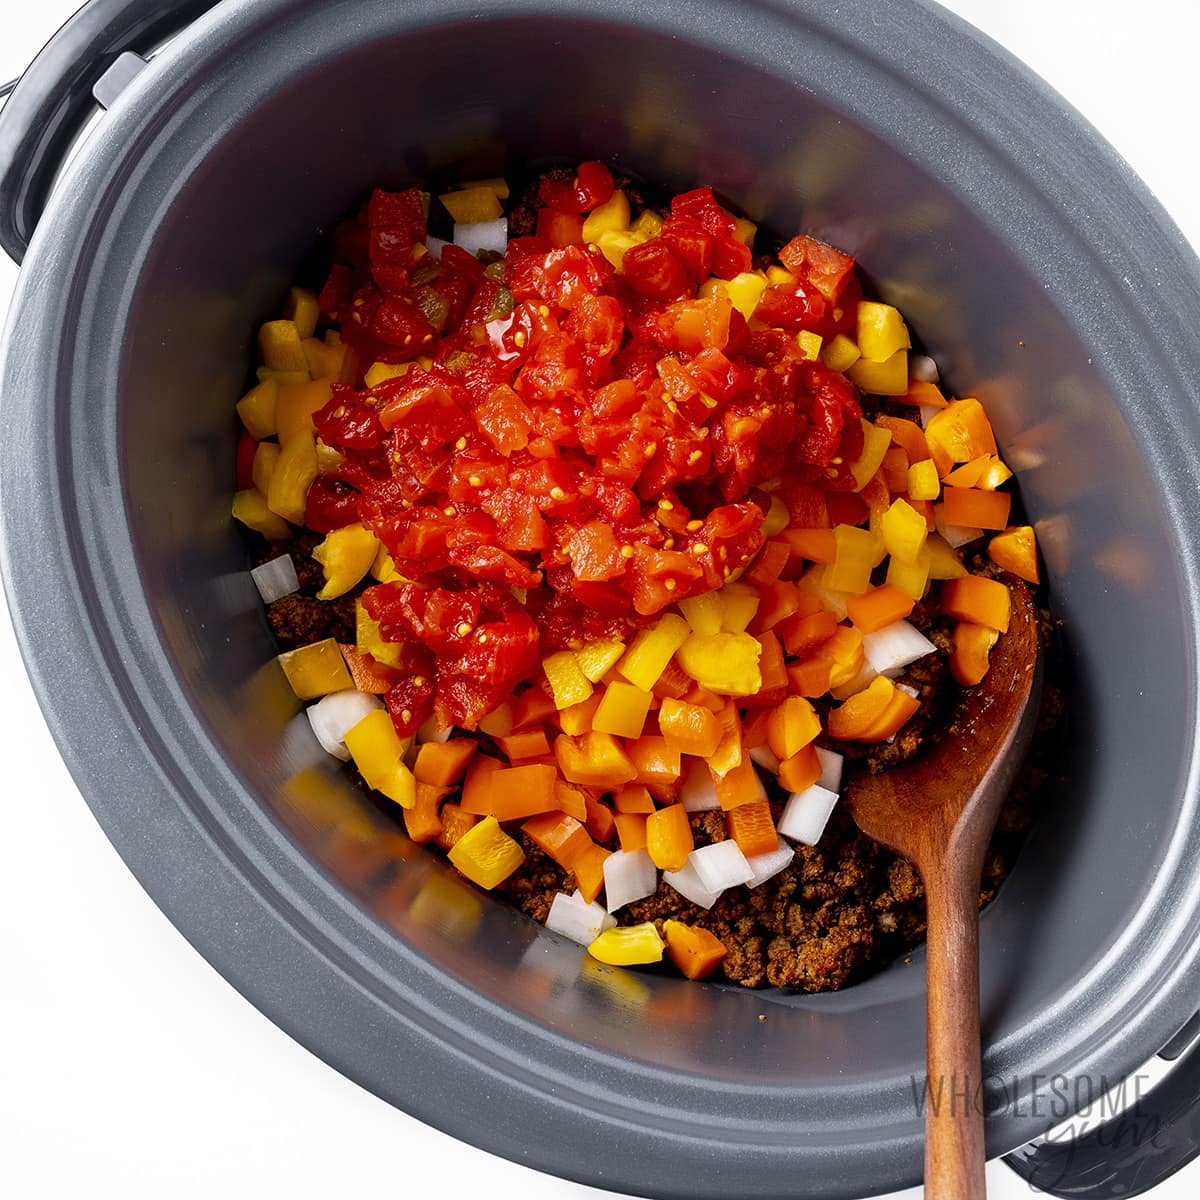 Mezcla de carne molida colocada en una olla de cocción lenta con pimientos, cebollas y tomates.